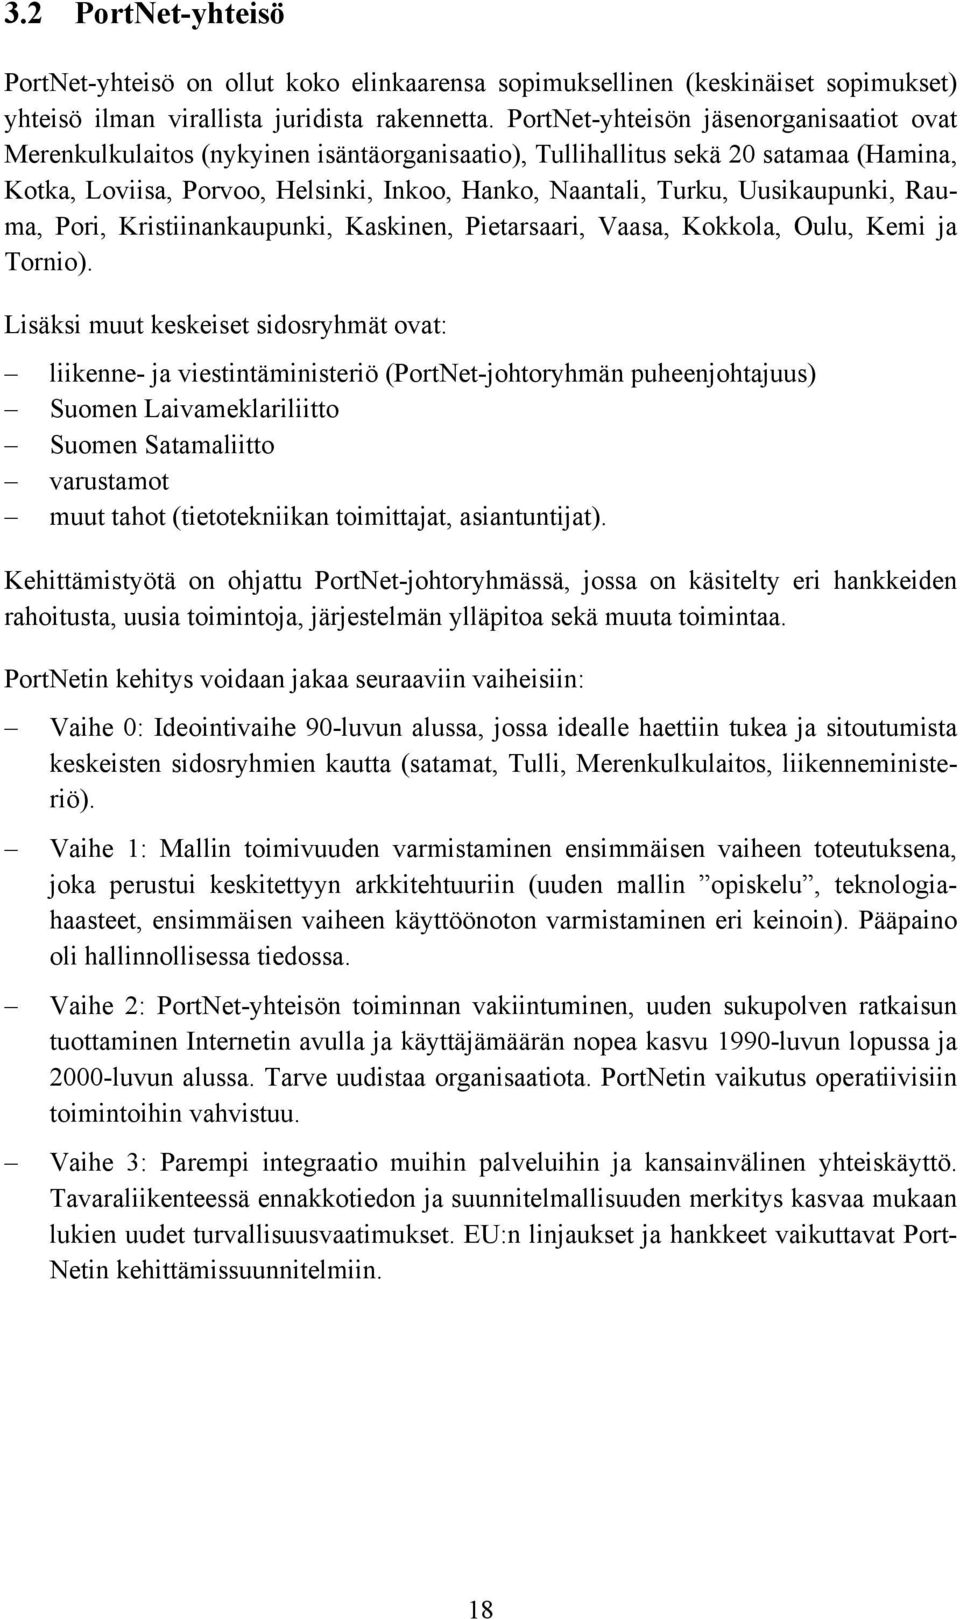 Uusikaupunki, Rauma, Pori, Kristiinankaupunki, Kaskinen, Pietarsaari, Vaasa, Kokkola, Oulu, Kemi ja Tornio).